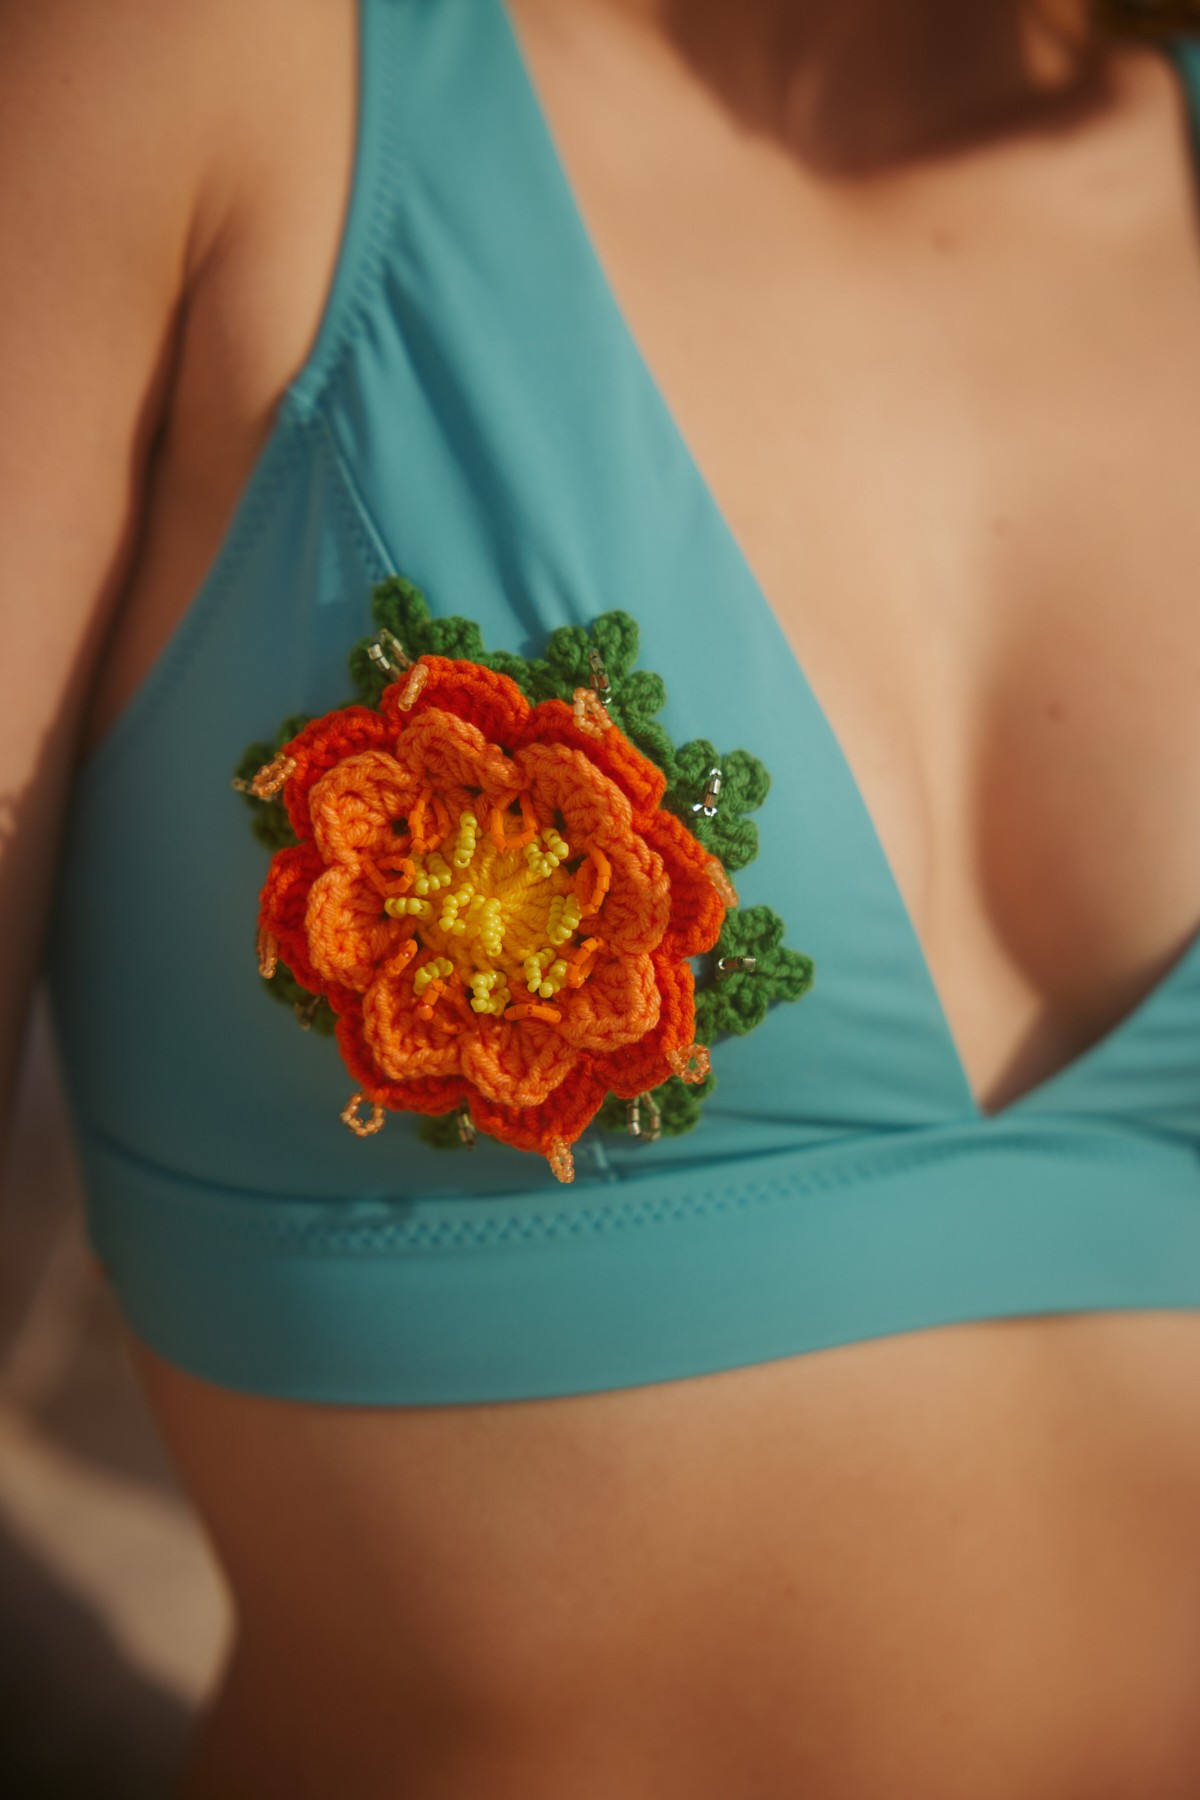 Water lily bikini top